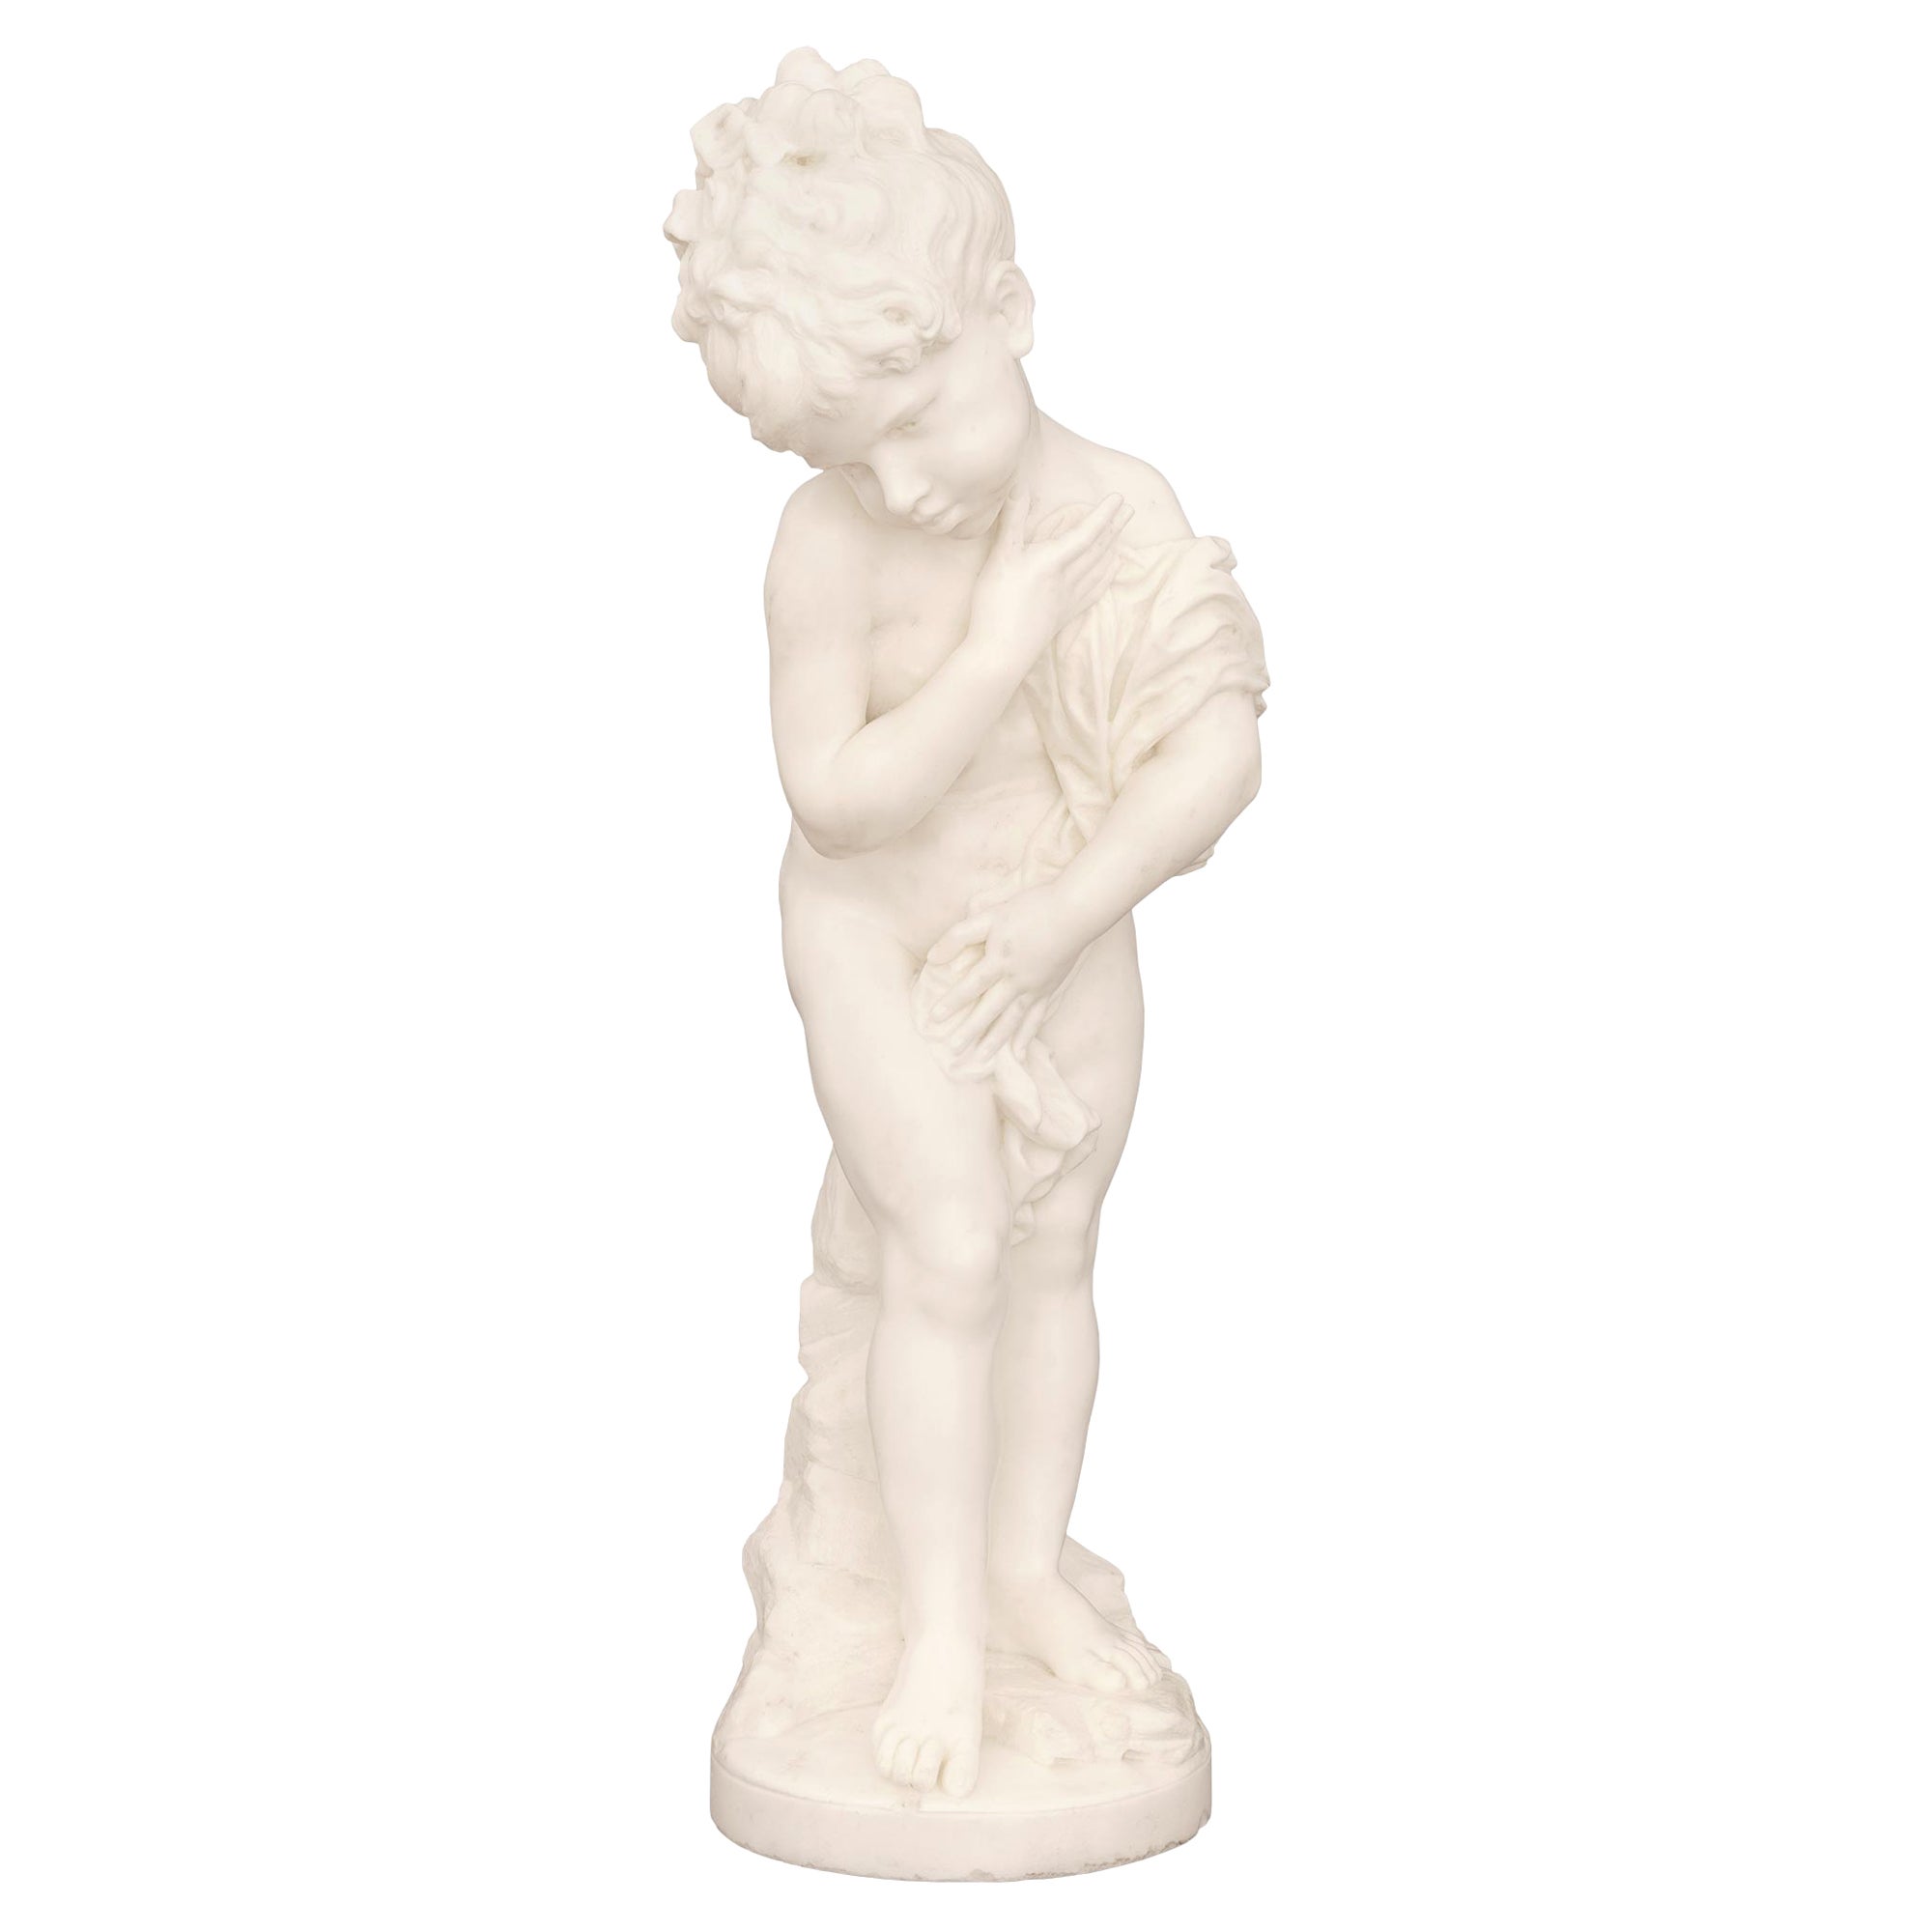 Italian 19th Century White Carrara Marble Statue Signed F. Mariotti Scul For Sale